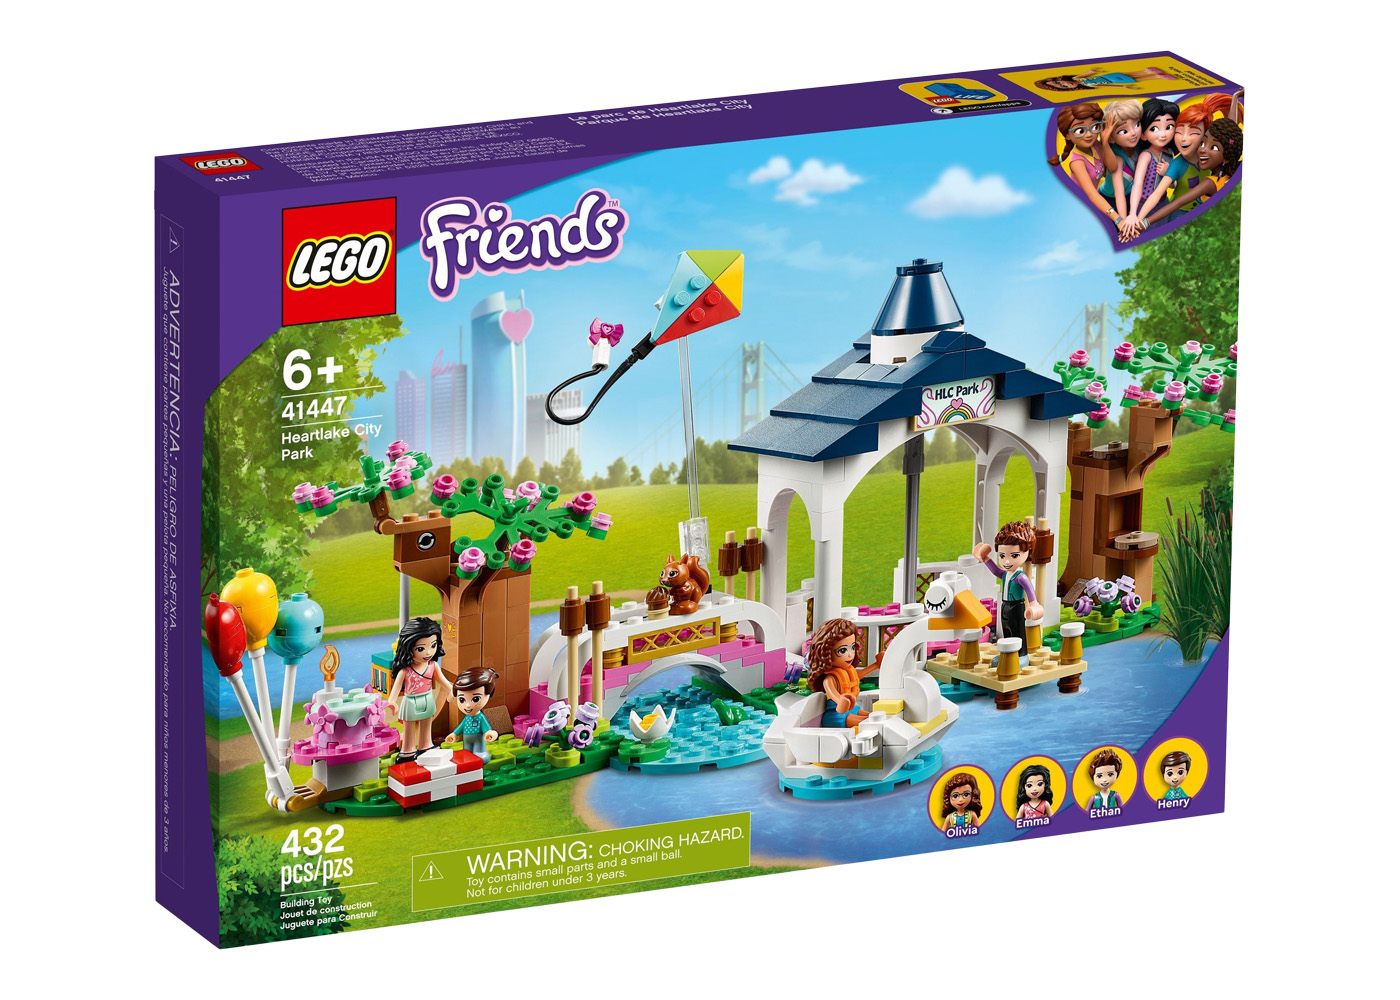 LEGO Friends Summer Fun Water Park Set 41430 - US